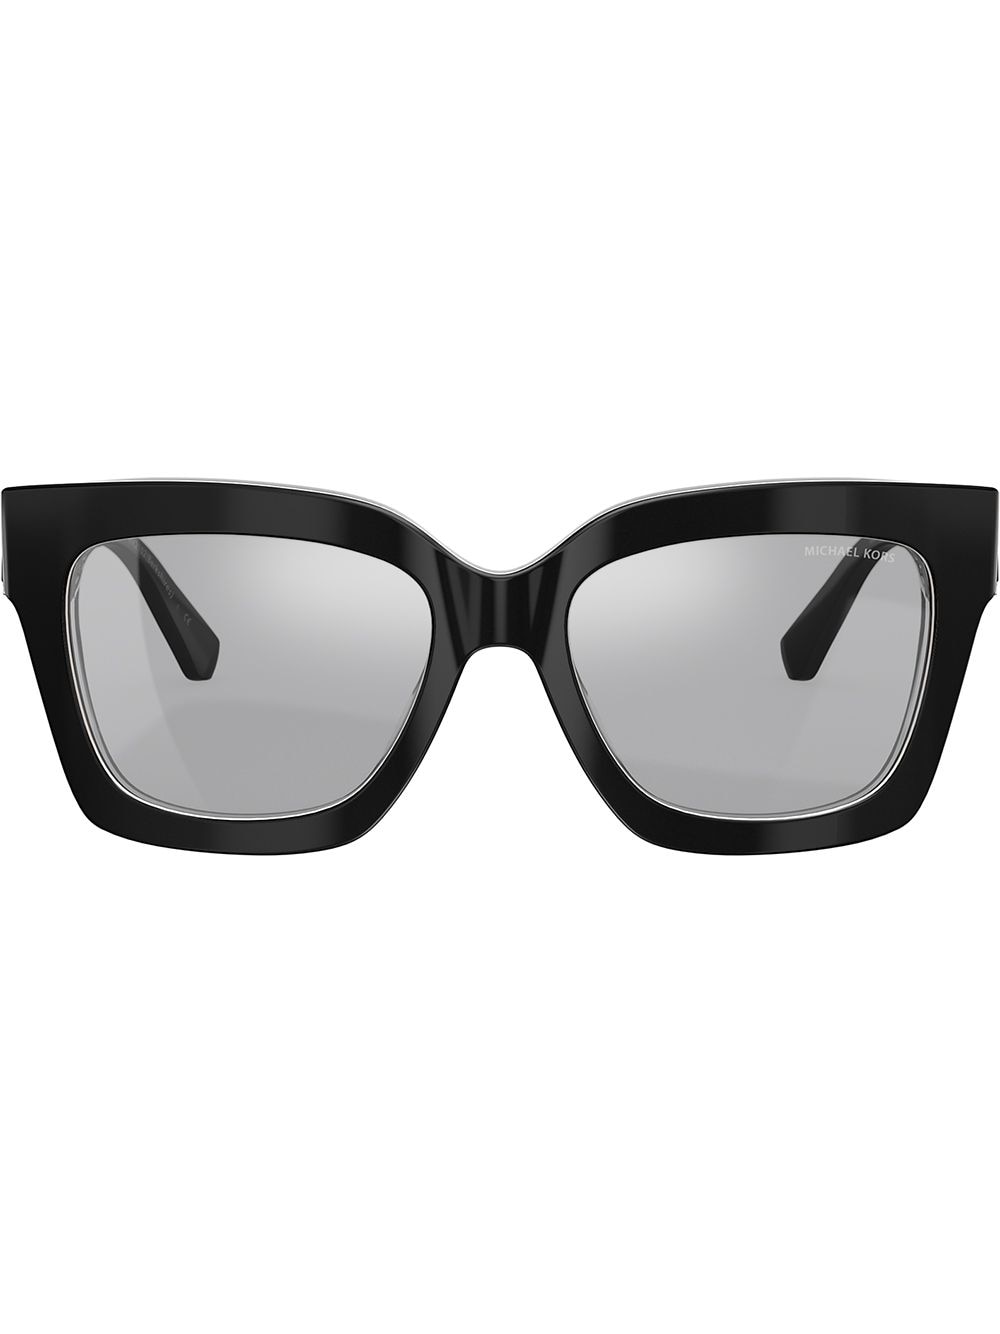 Michael Kors Berkshires Sunglasses In Black